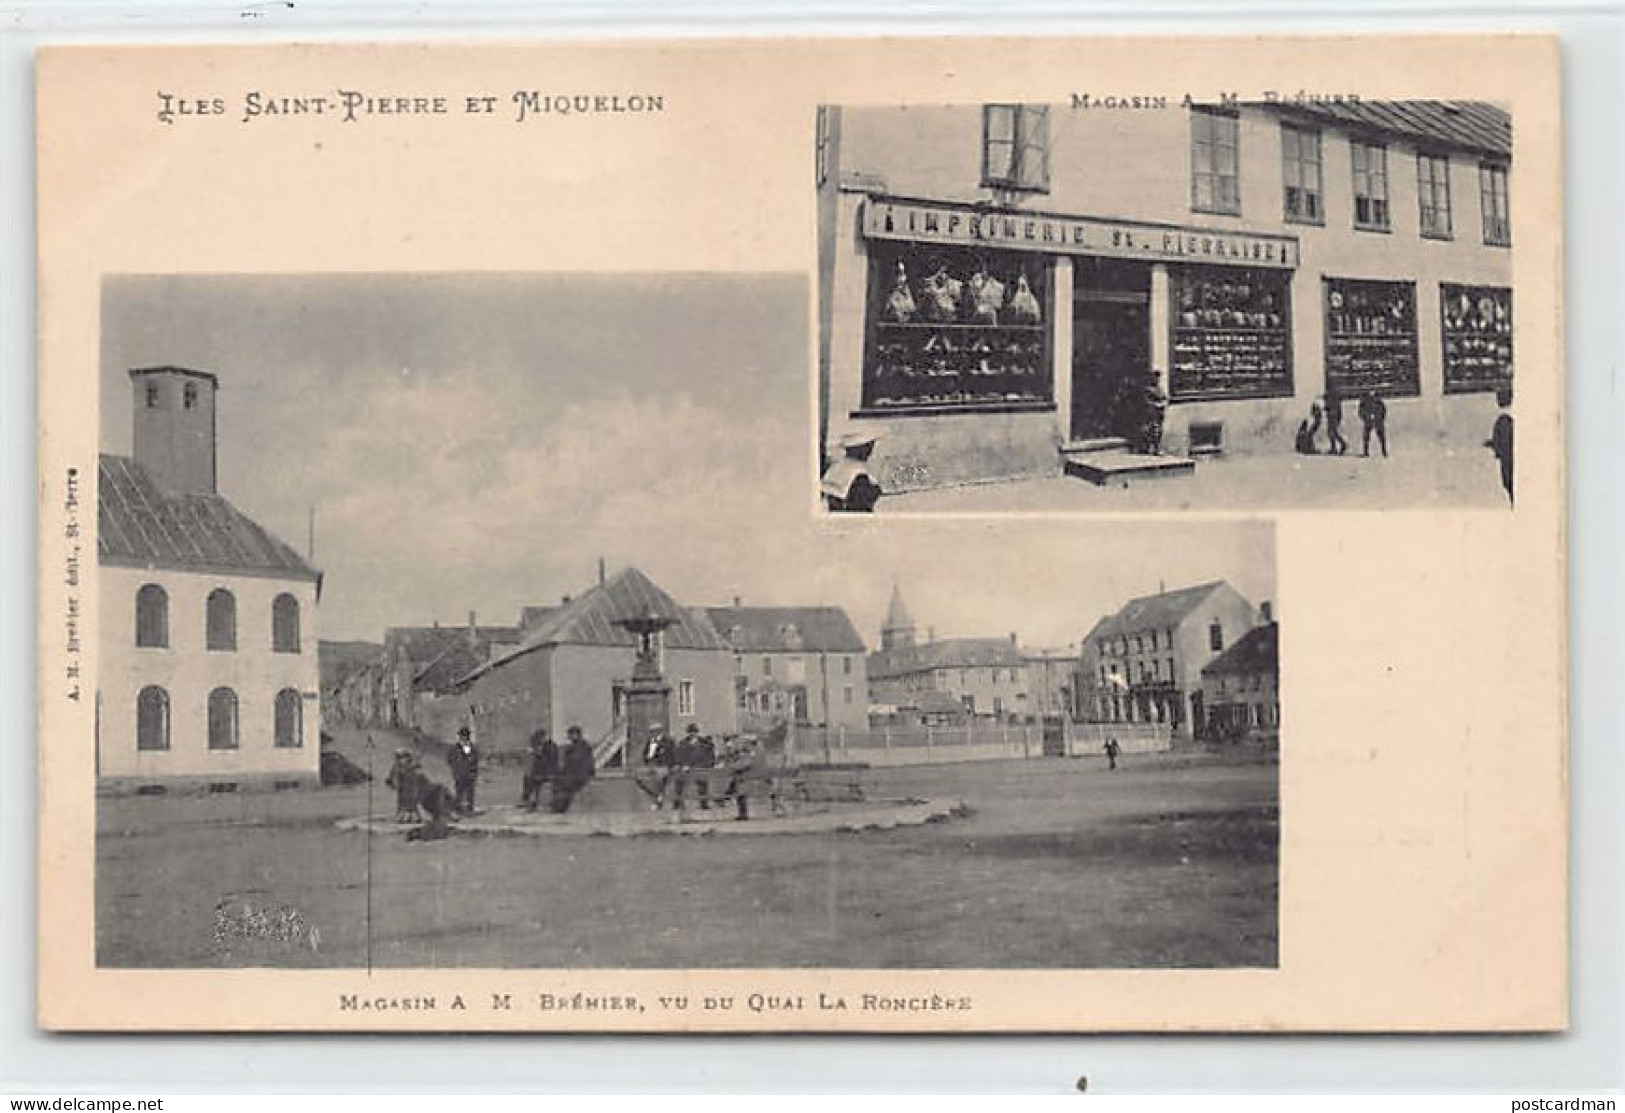 SAINT-PIERRE - Magasin A. M. Brehier, Vu Du Quai De La Roncière - CARTE PUBLICITAIRE - Ed. A. M. Bréhier  - Saint-Pierre-et-Miquelon